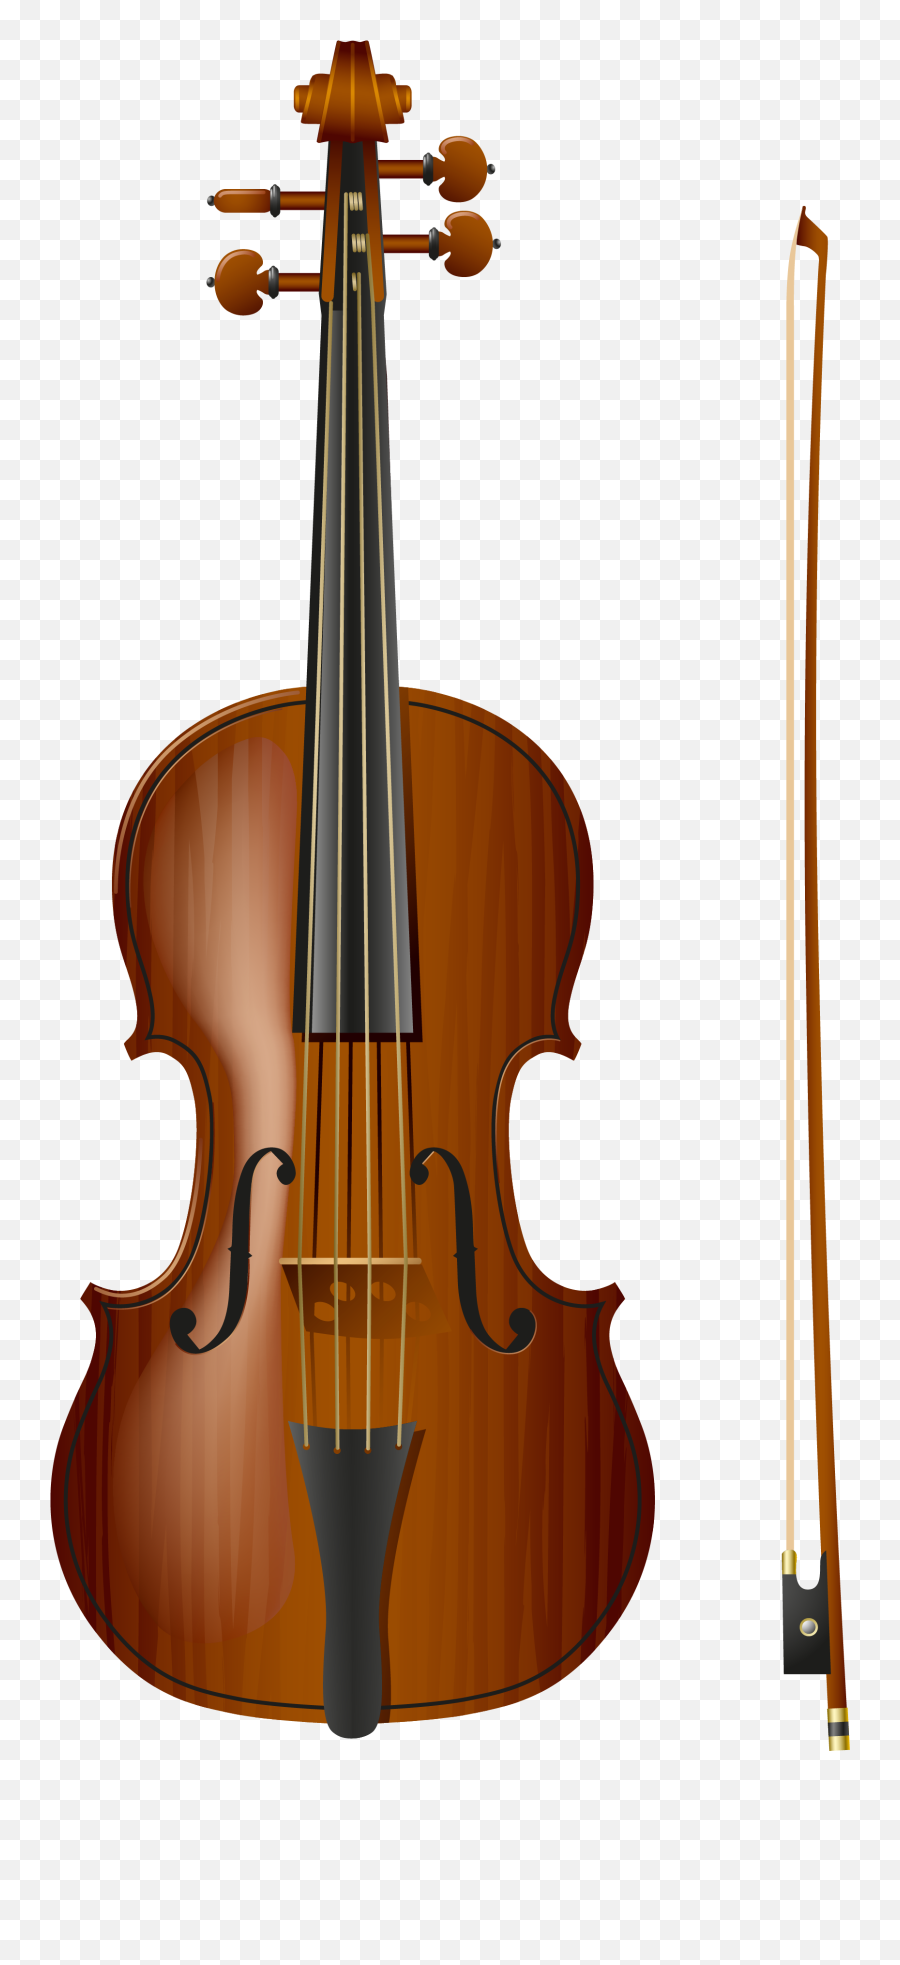 Clipart Png Picture Transparent - Transparent Background Violin Png,Violin Transparent Background